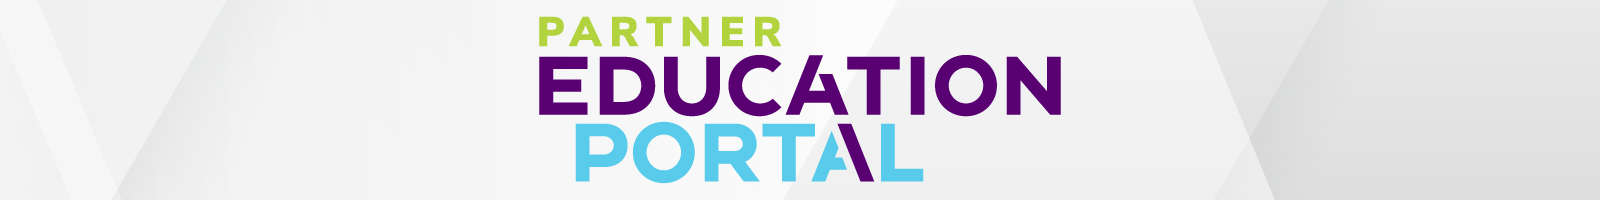 partner_education_portal_header_1600x200